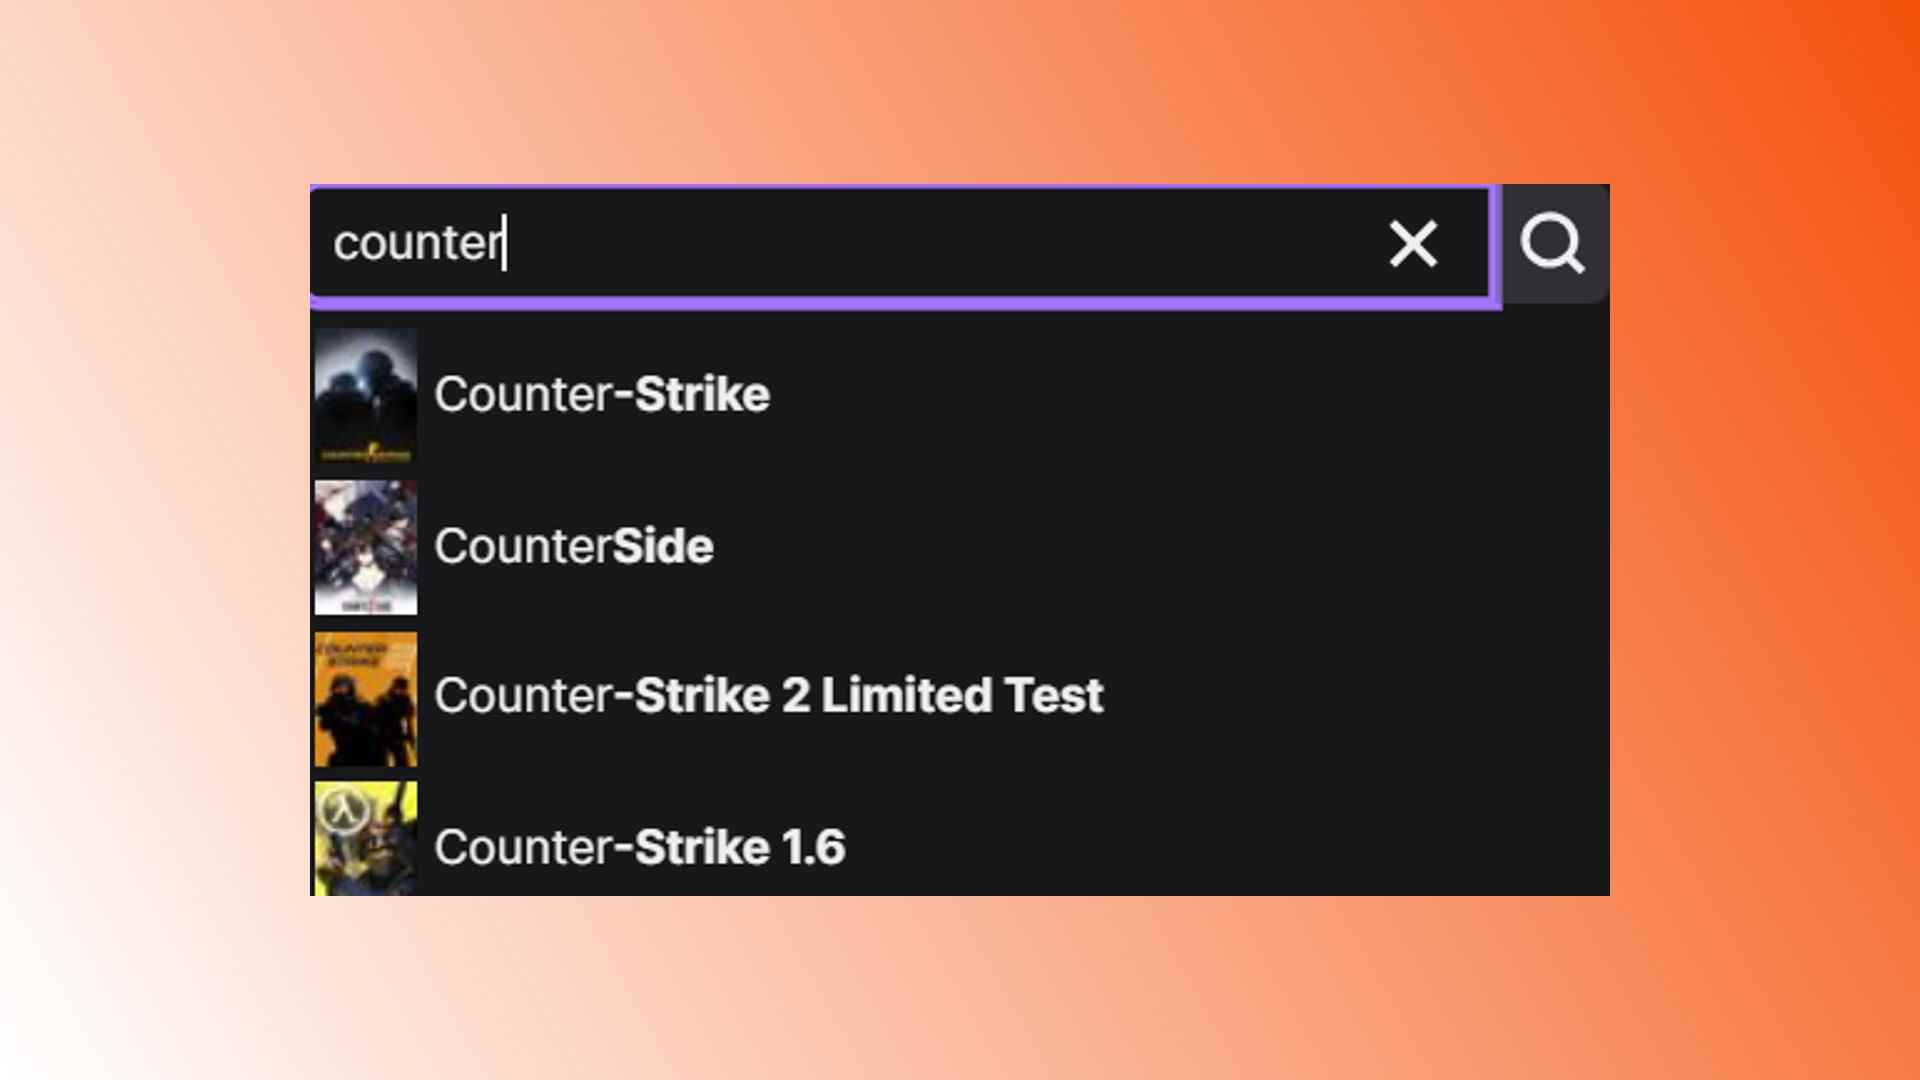 CSGO Twitch kaldırıldı: Twitch'ten izlenebilecek Counter-Strike oyunlarını gösteren bir resim